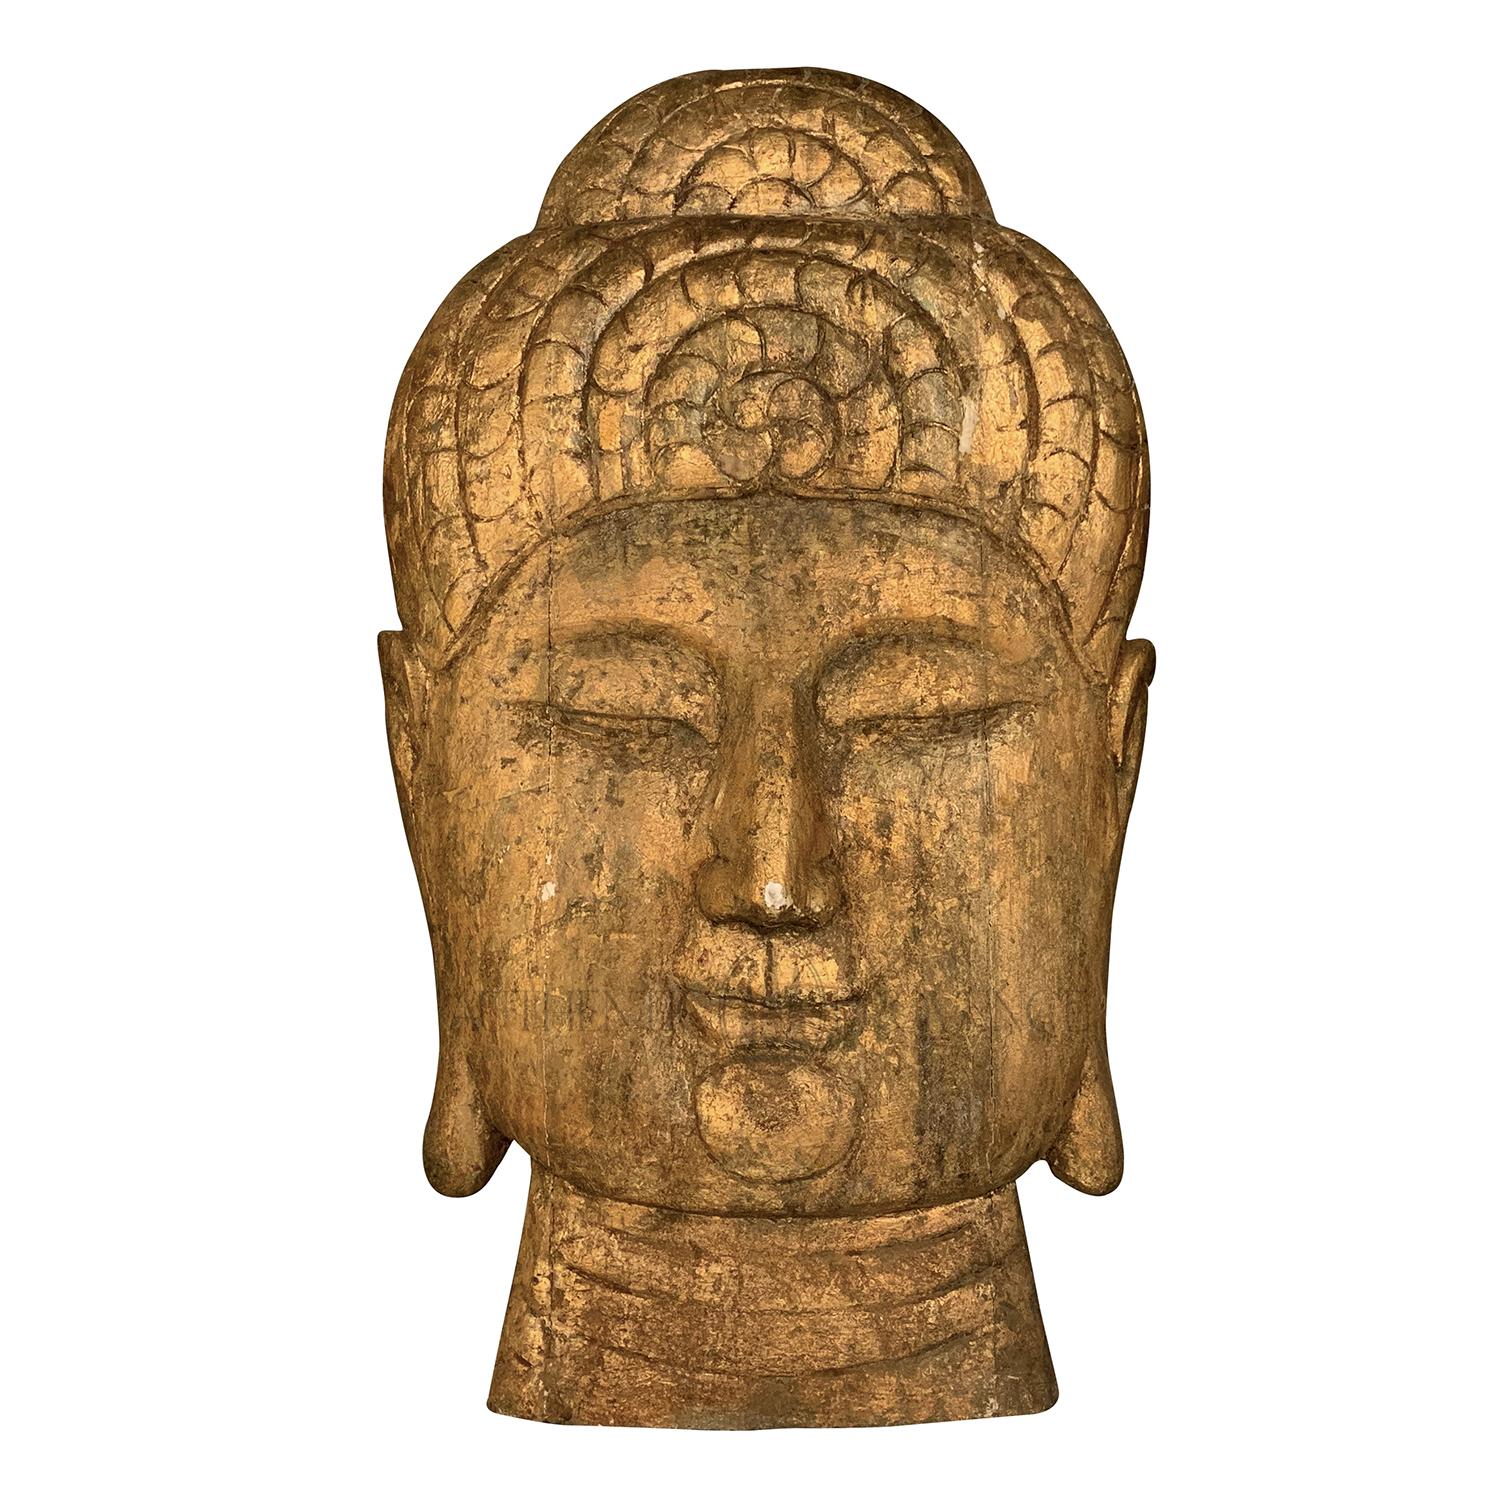 Tête de Bouddha asiatique en bois tropical surdimensionné or-brun du 20e siècle, décoration murale en vente